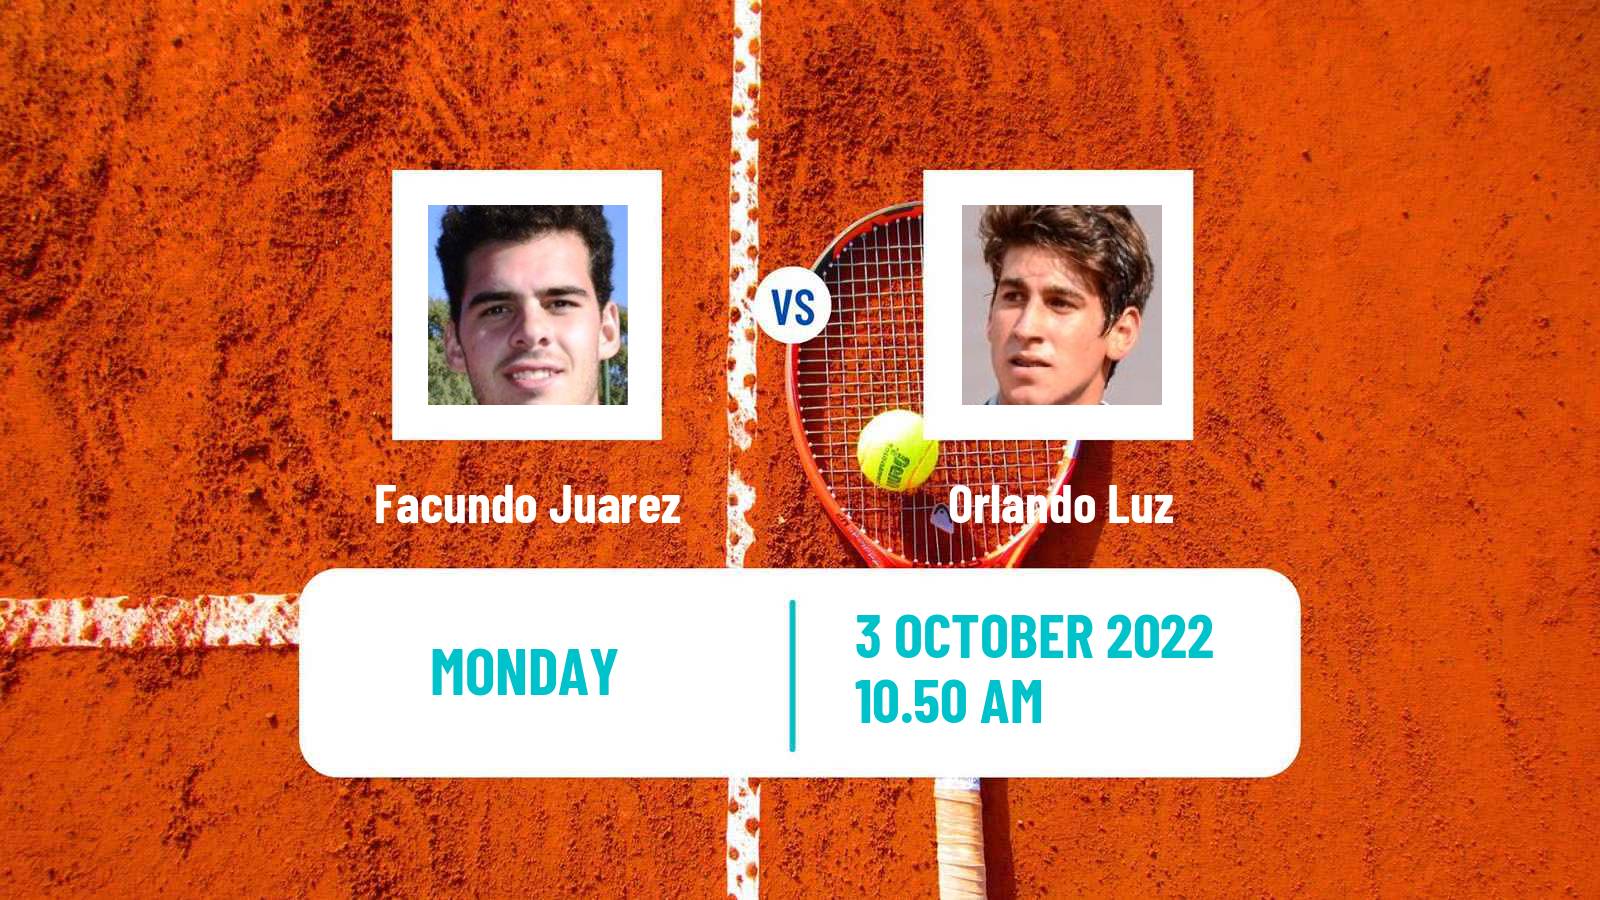 Tennis ATP Challenger Facundo Juarez - Orlando Luz